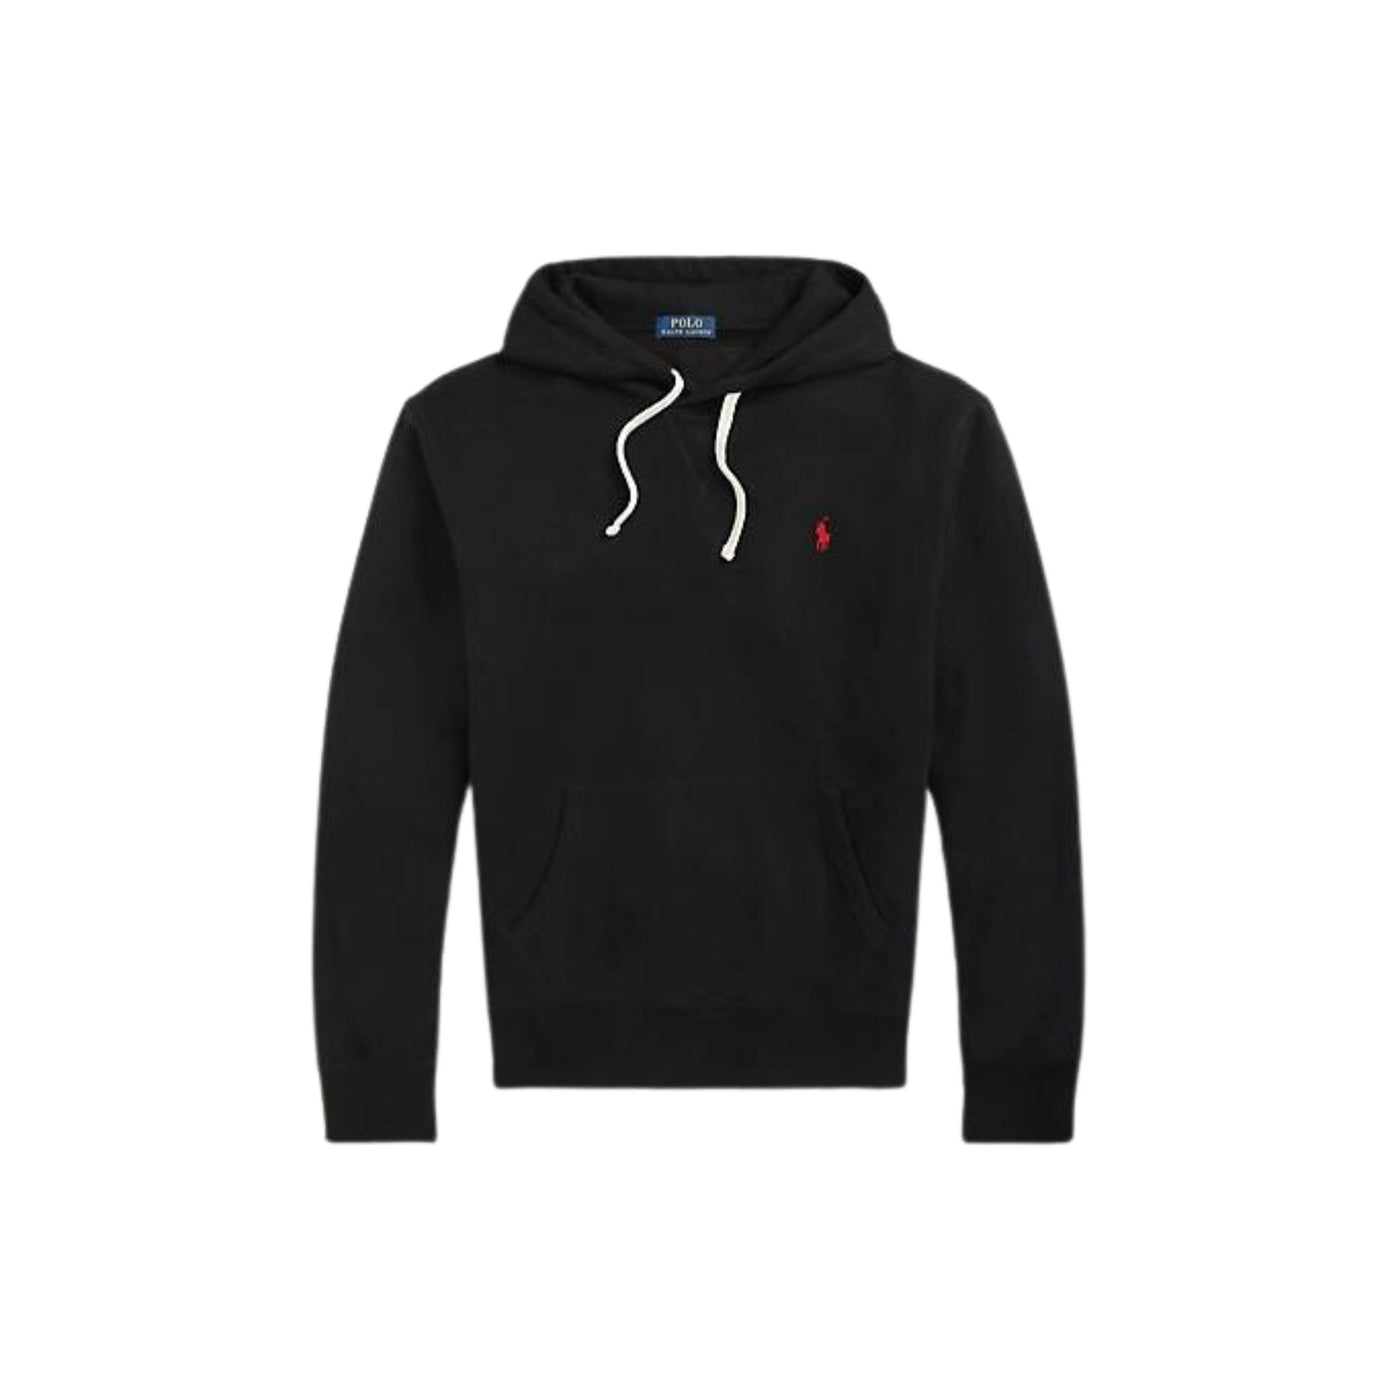 Men's sweatshirt with black adjustable hood